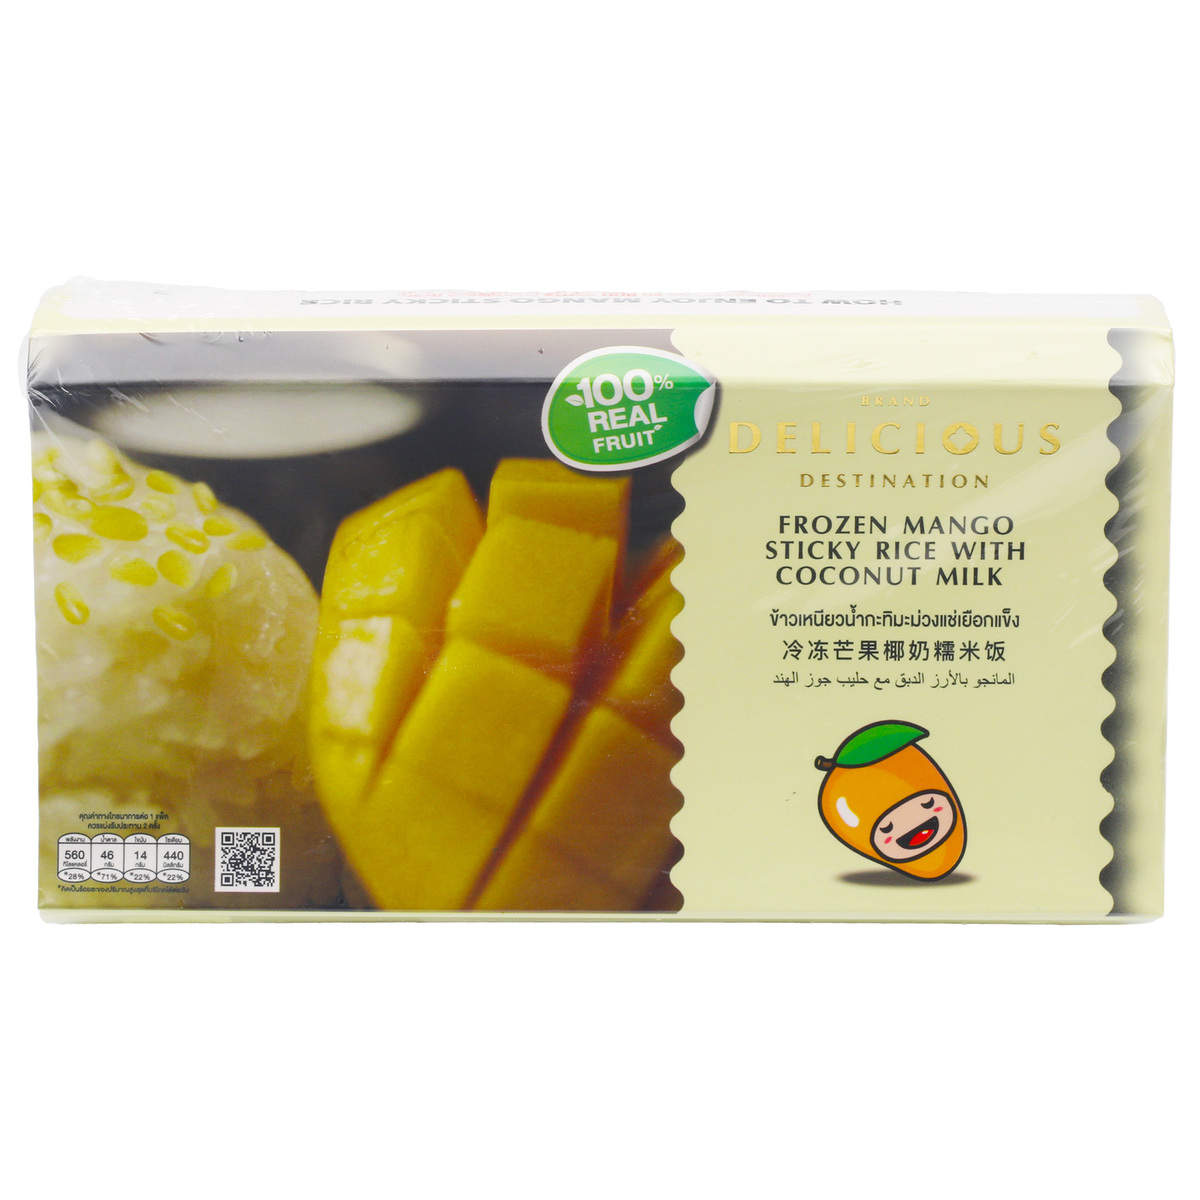 اشتري قم بشراء Delicious Destination Frozen Mango Sticky Rice With Coconut Milk 230 g Online at Best Price من الموقع - من لولو هايبر ماركت Ethnic Ready Meals في الكويت